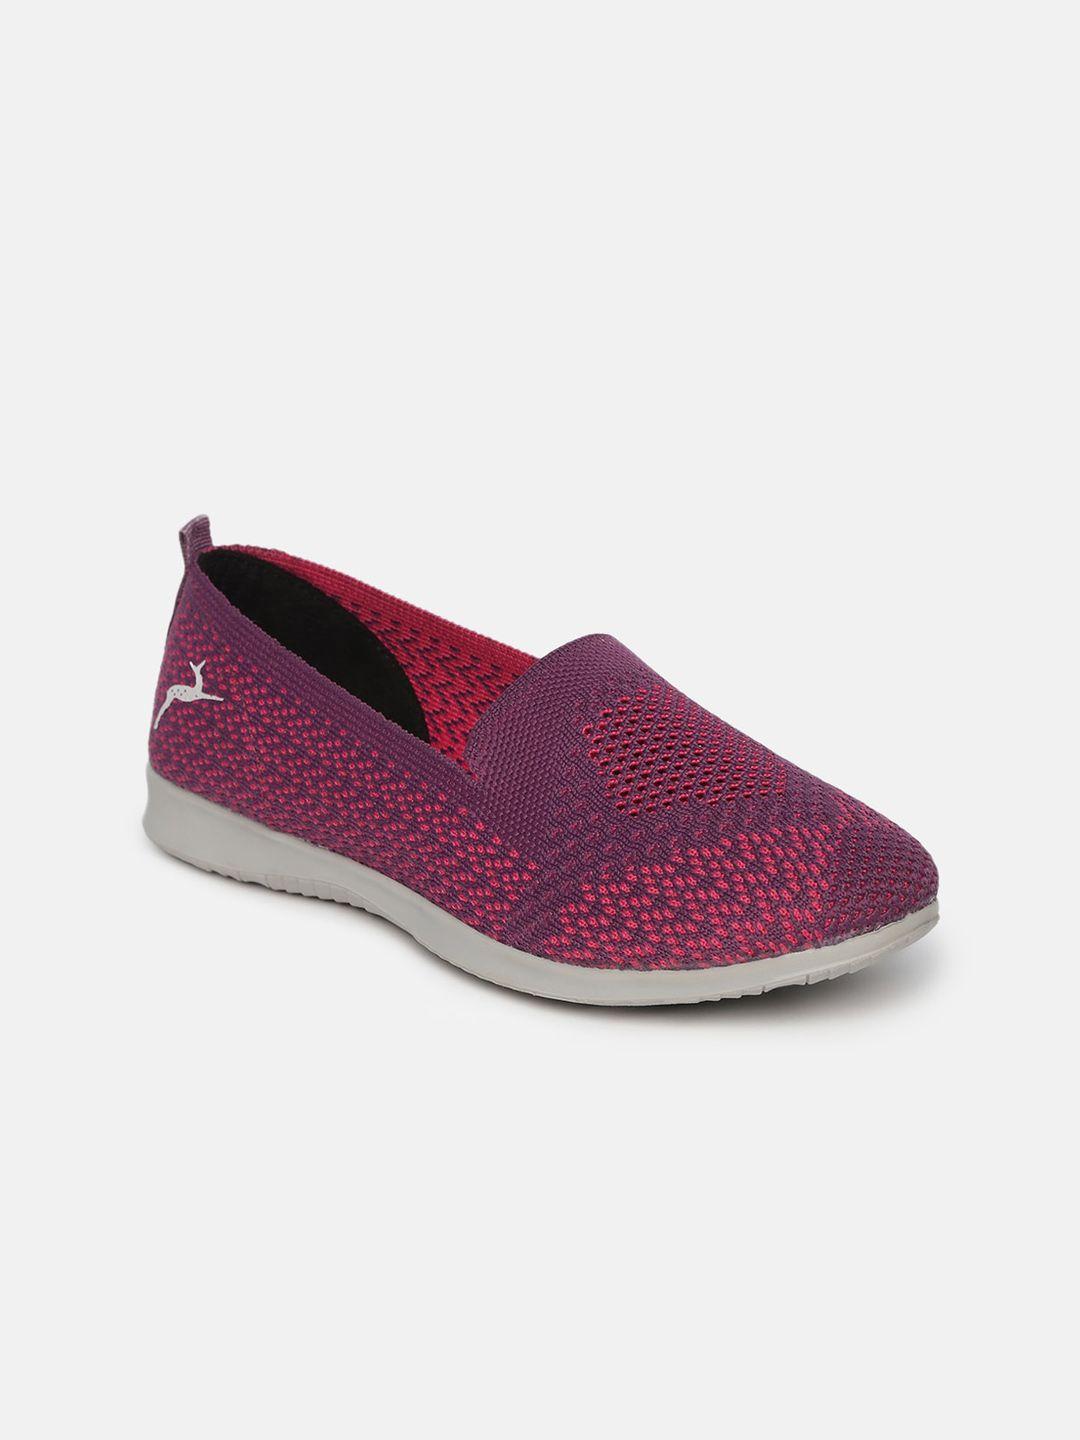 marc loire women purple & pink  woven design slip-on sneakers